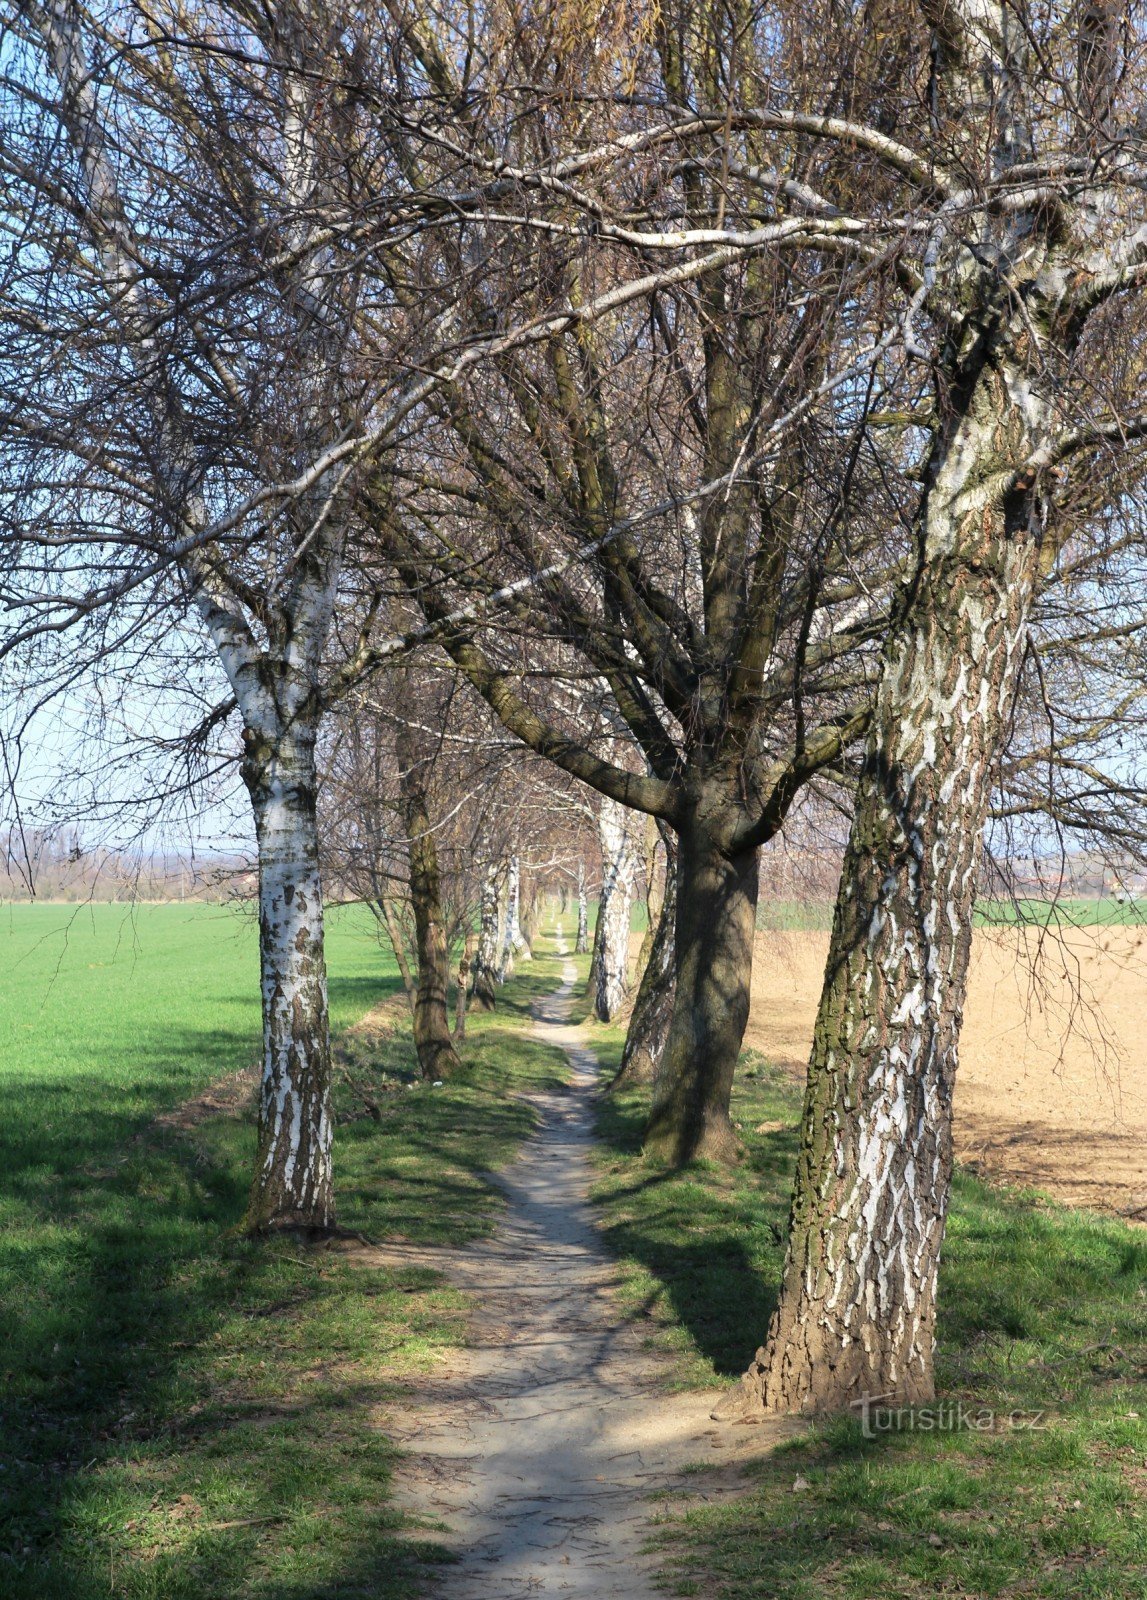 現在の Holasická cesta には、歩行者専用道路の特徴があります。